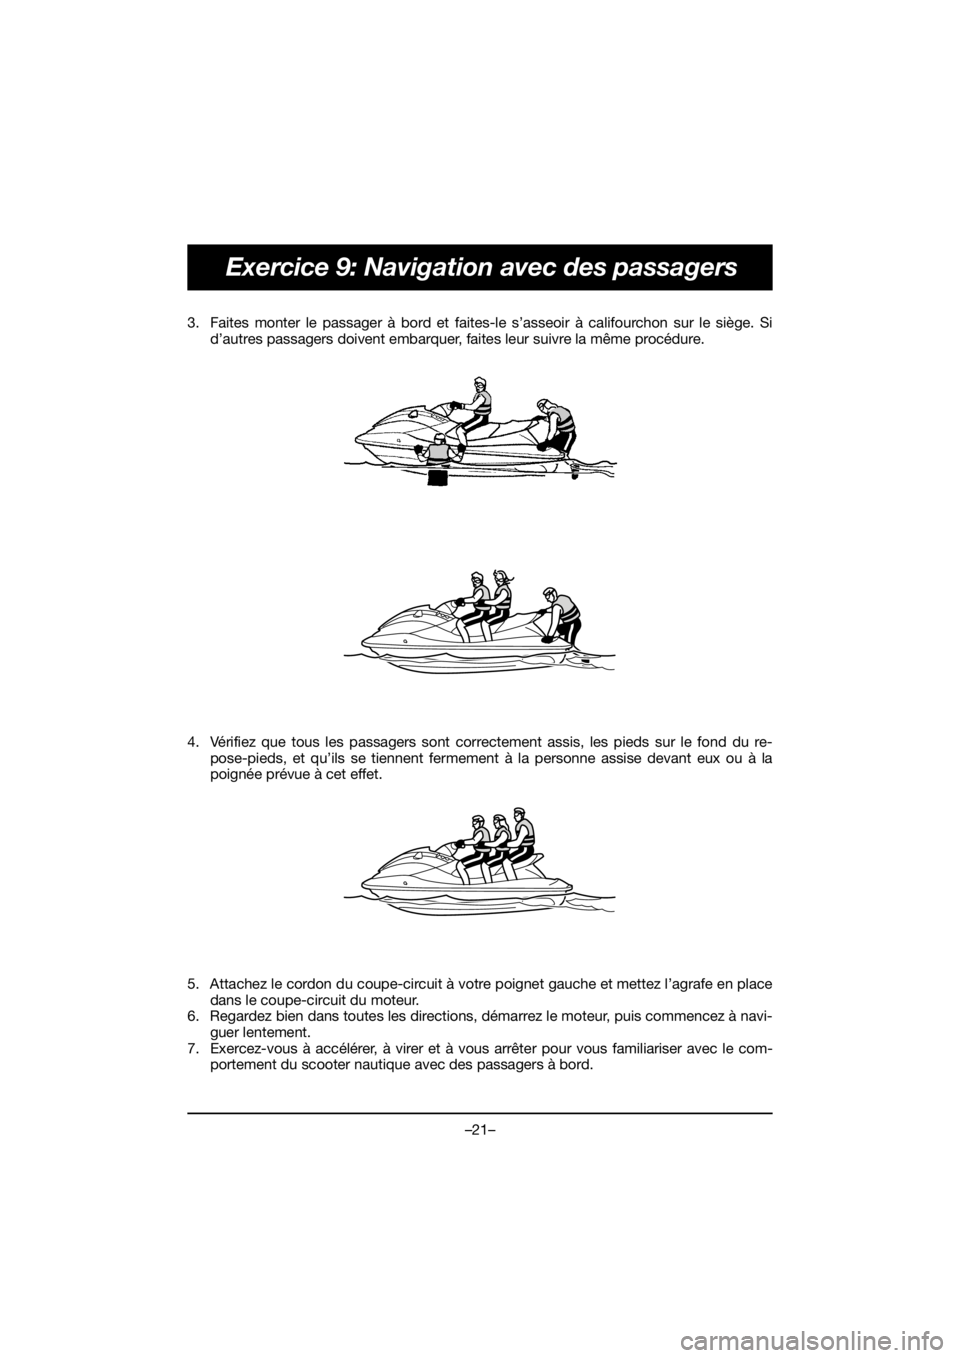 YAMAHA FJR1300 2019 Service Manual –21–
Exercice 9: Navigation avec des passagers
3. Faites monter le passager à bord et faites-le s’asseoir à califourchon sur le siège. Si
d’autres passagers doivent embarquer, faites leur s